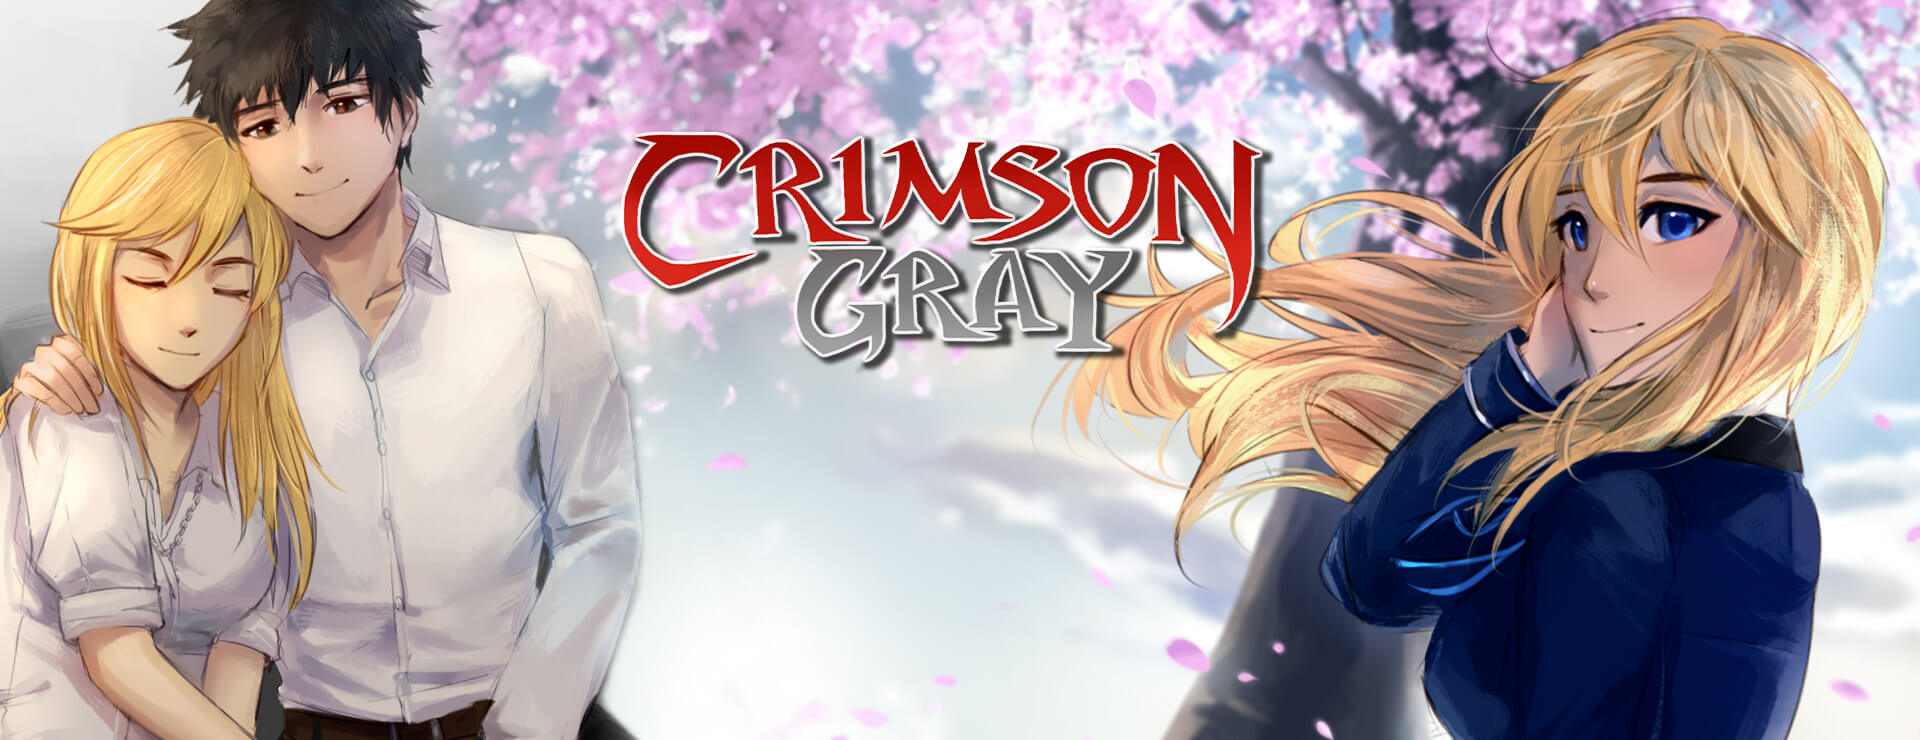 Crimson Gray (SFW Version) - Przygodowa akcji Gra